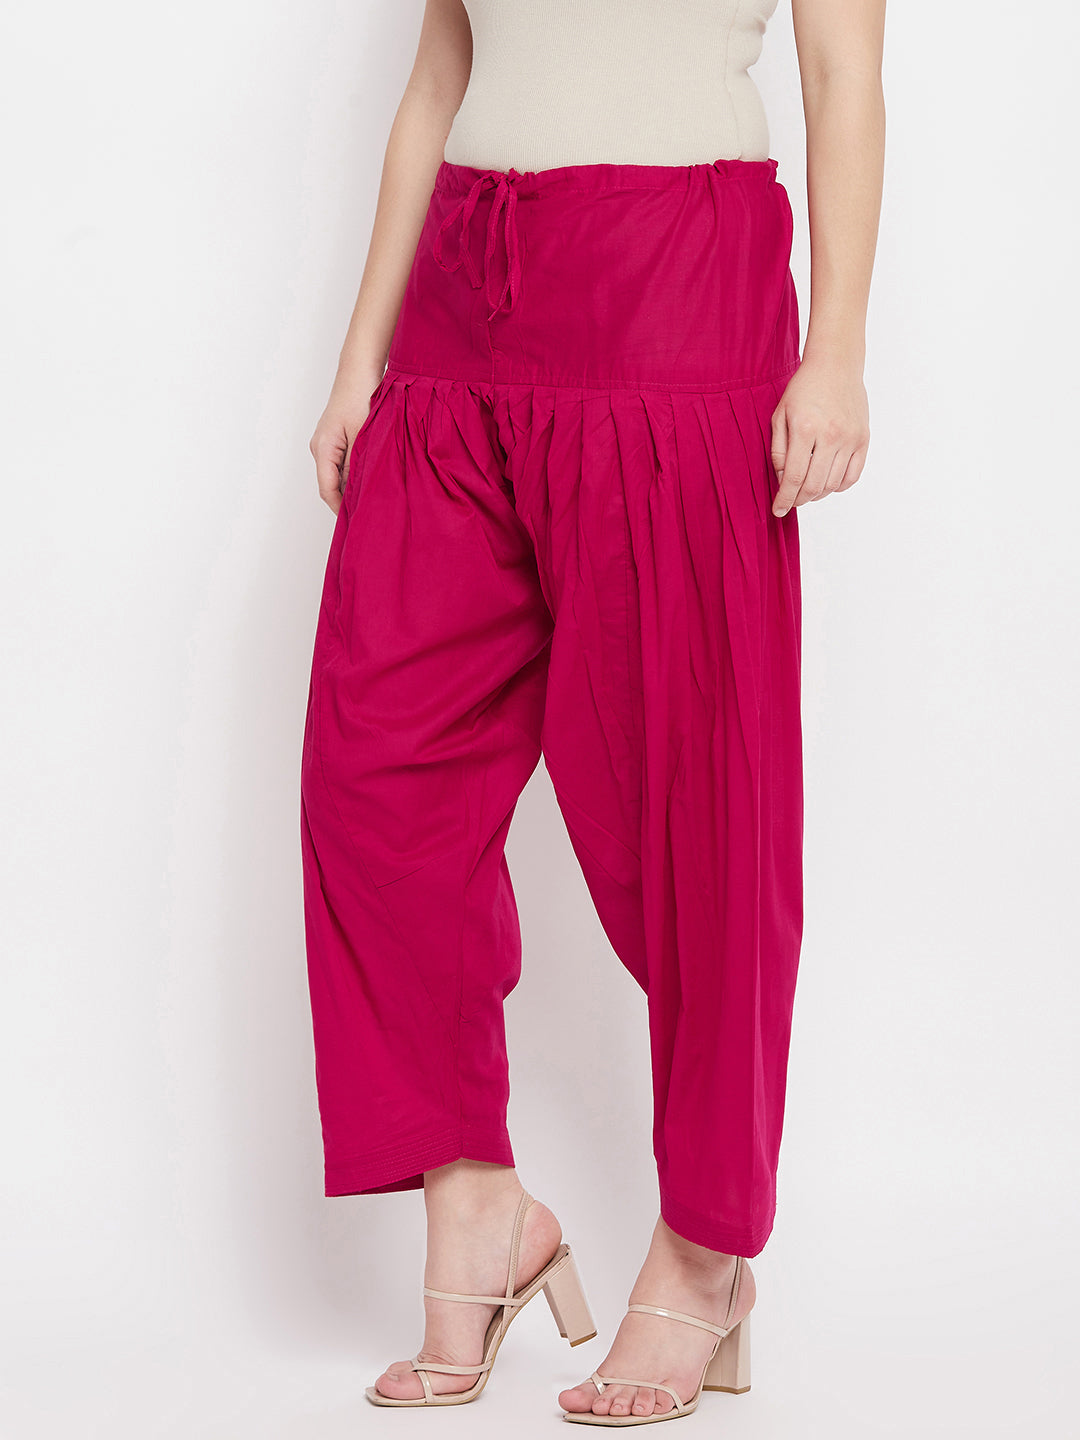 Readymade Red PATIALA/ Patiyala SALWAR Indian Punjab Cotton Pants | eBay